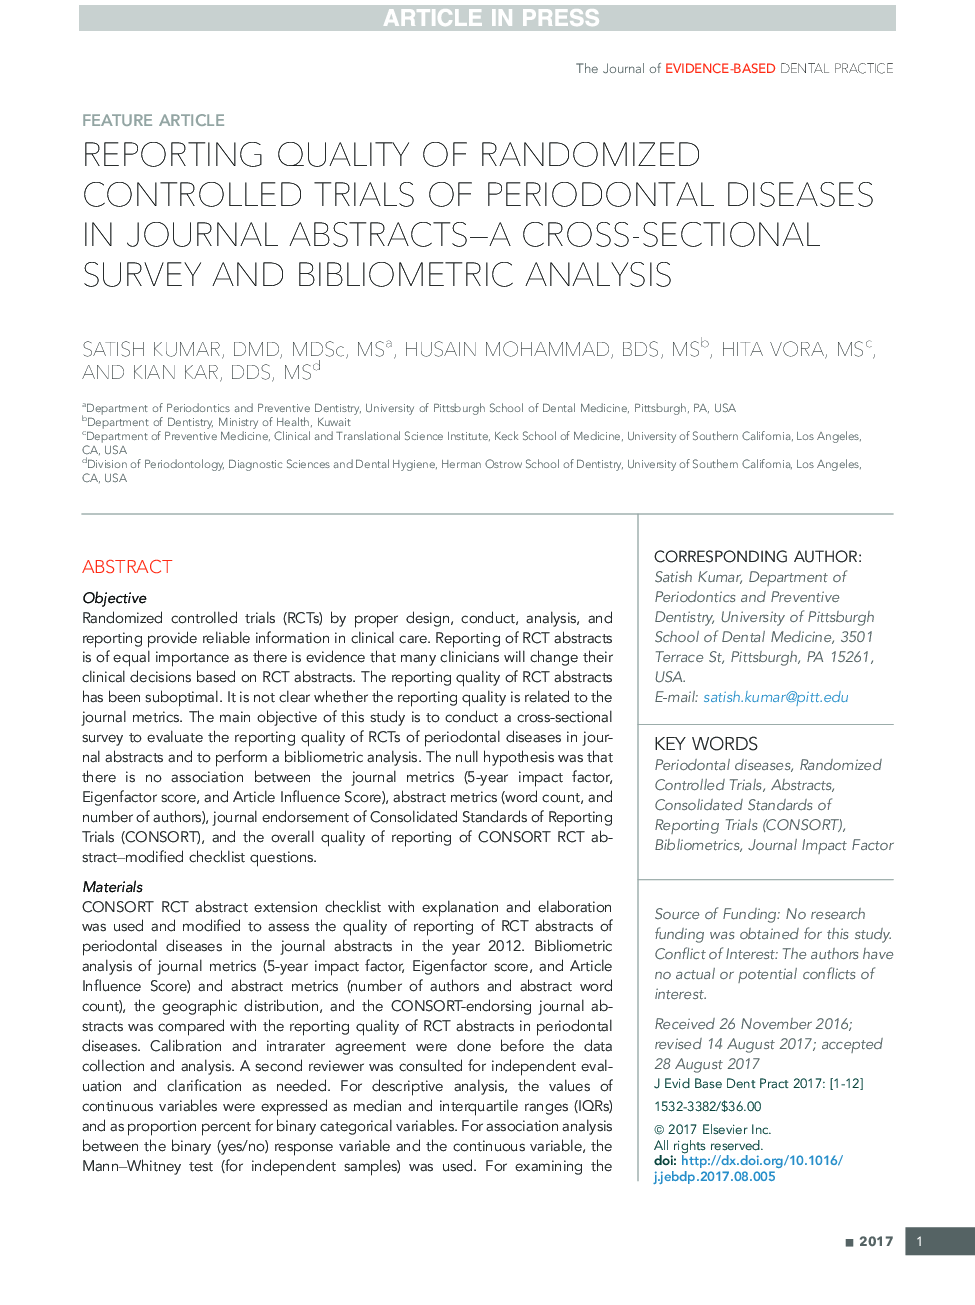 کیفیت گزارشدهی تصادفی کنترل شده بیماری های پریودنتال در خلاصه های نشریات - مقطعی، مقطعی و تحلیل کتابشناختی 